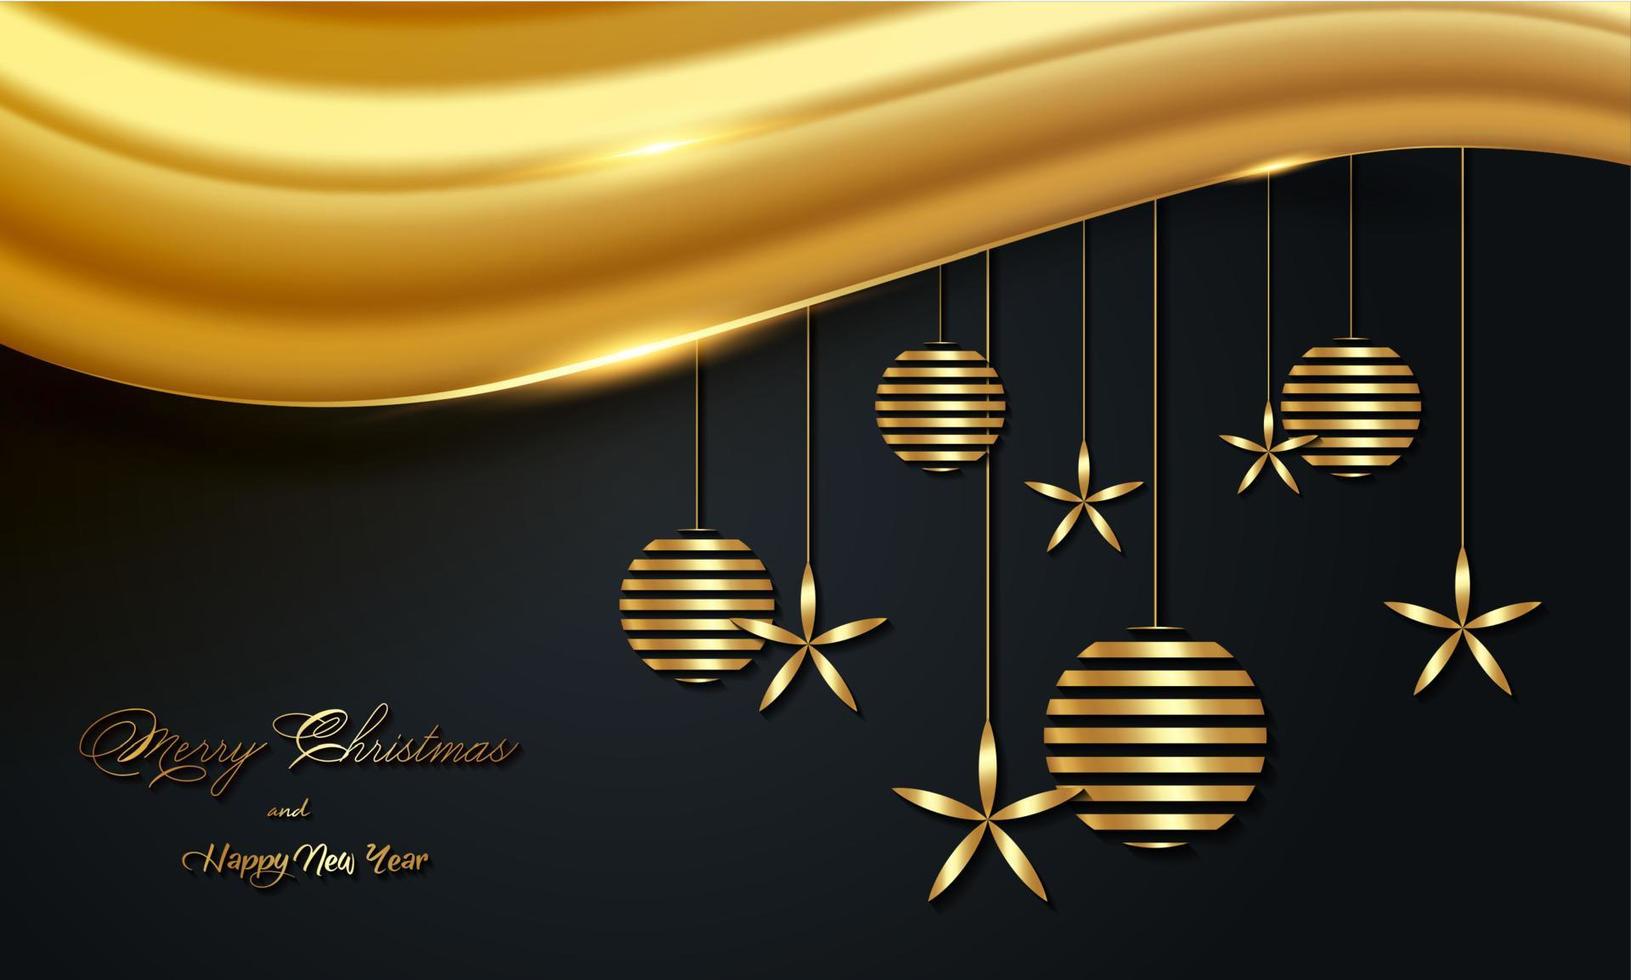 Banner de vacaciones de lujo navideño con feliz navidad y feliz año nuevo manuscrito dorado y bolas navideñas de color dorado. ilustración vectorial aislado sobre fondo negro vector